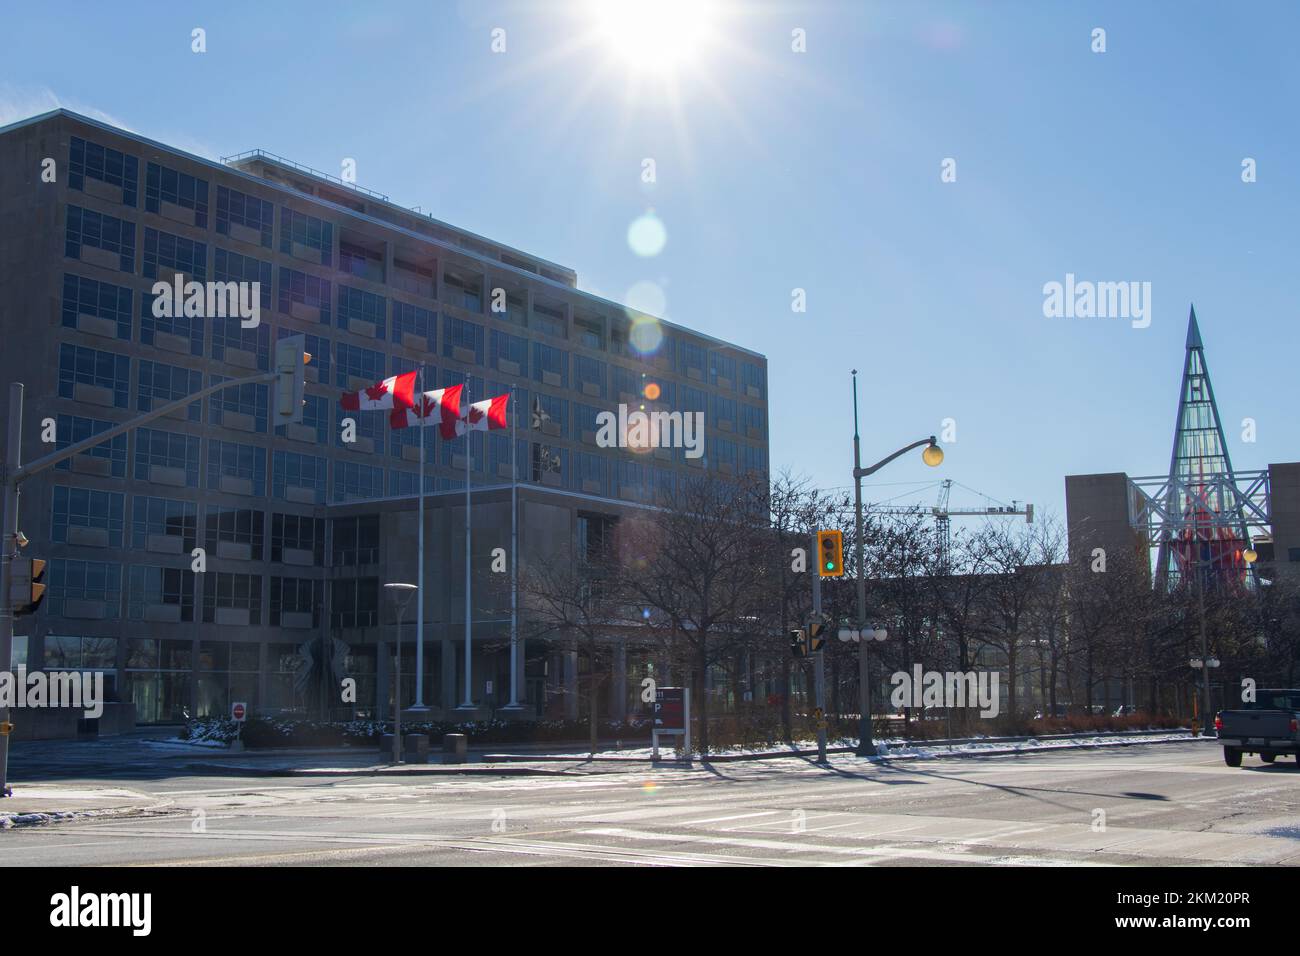 Le soleil brille sur l'édifice du bureau du gouvernement fédéral canadien d'Affaires mondiales Canada, l'organisme gère les intérêts du Canada dans le monde entier. Banque D'Images